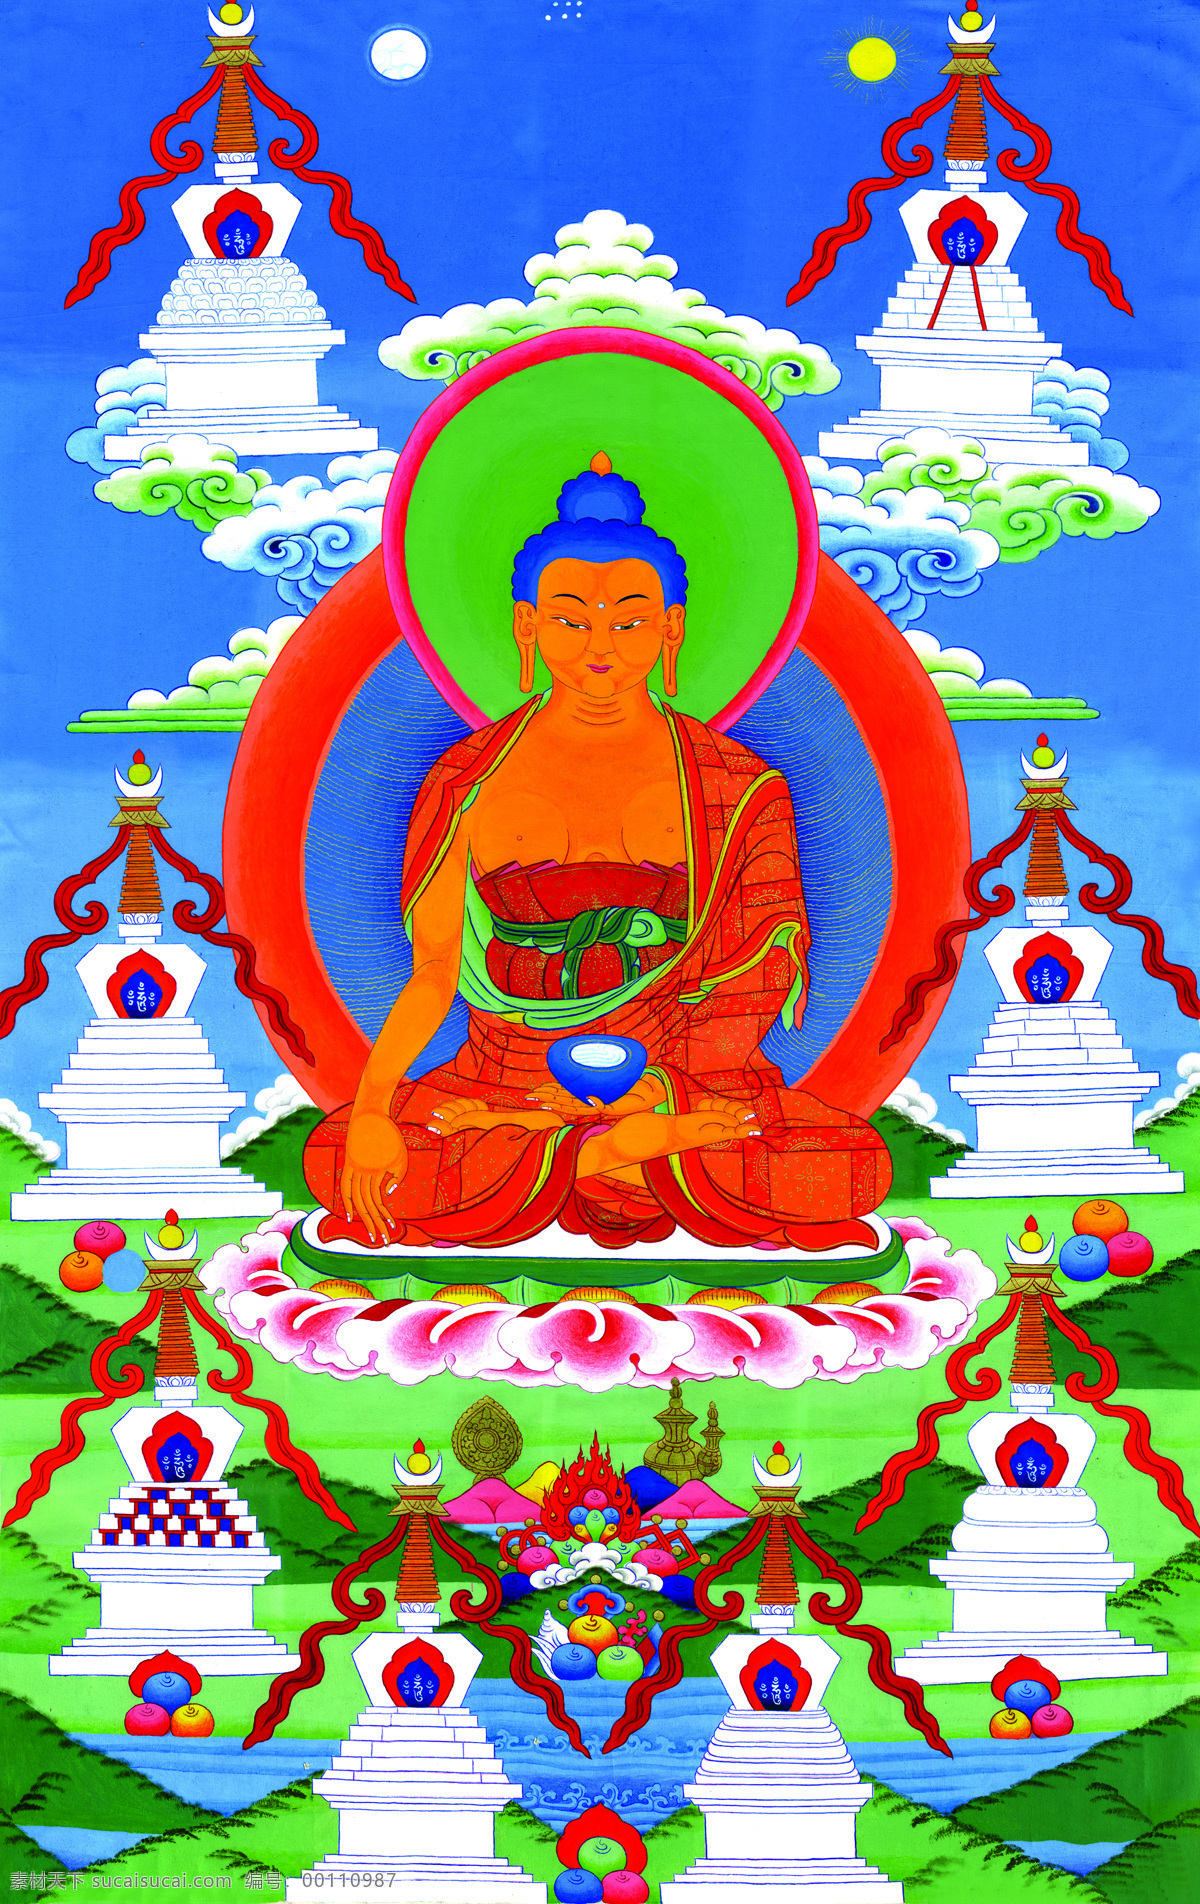 唐卡 佛教 藏传佛教 佛 宗教 宗教信仰 菩萨 西藏 民族 工艺 花纹 释迦牟尼 塔子 绘画 艺术 绘画书法 文化艺术